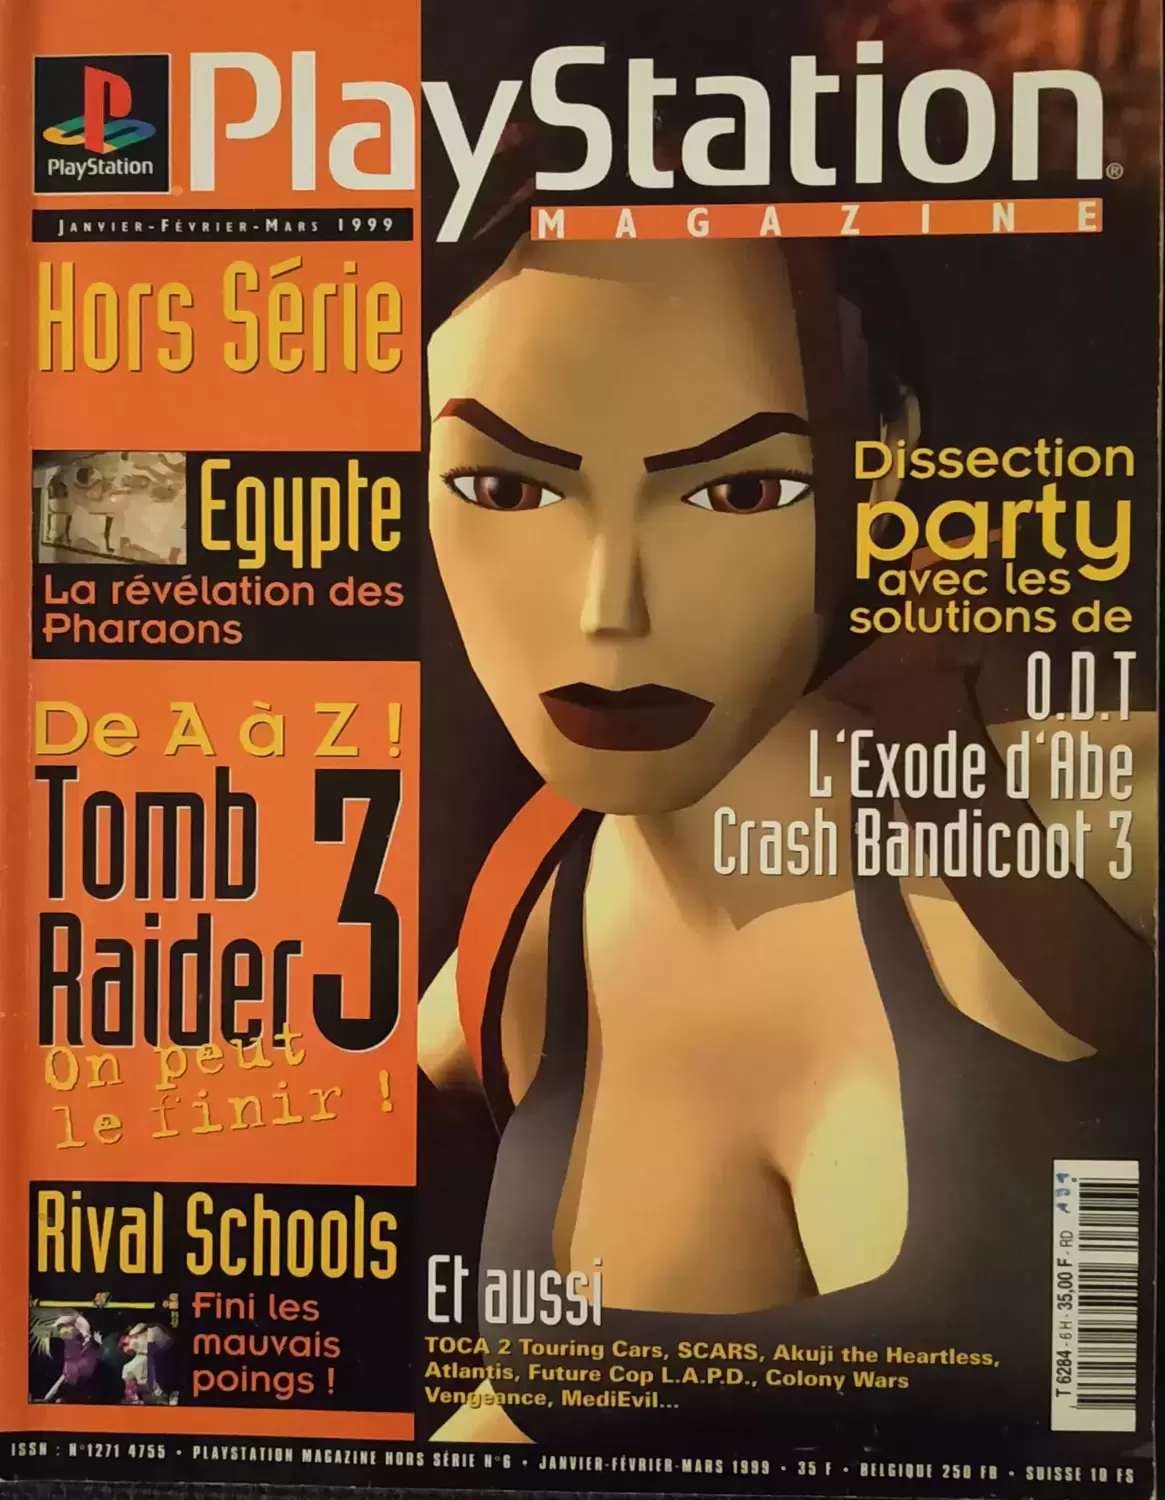 Playstation Magazine - Playstation Magazine Numéro Hors Serie 6